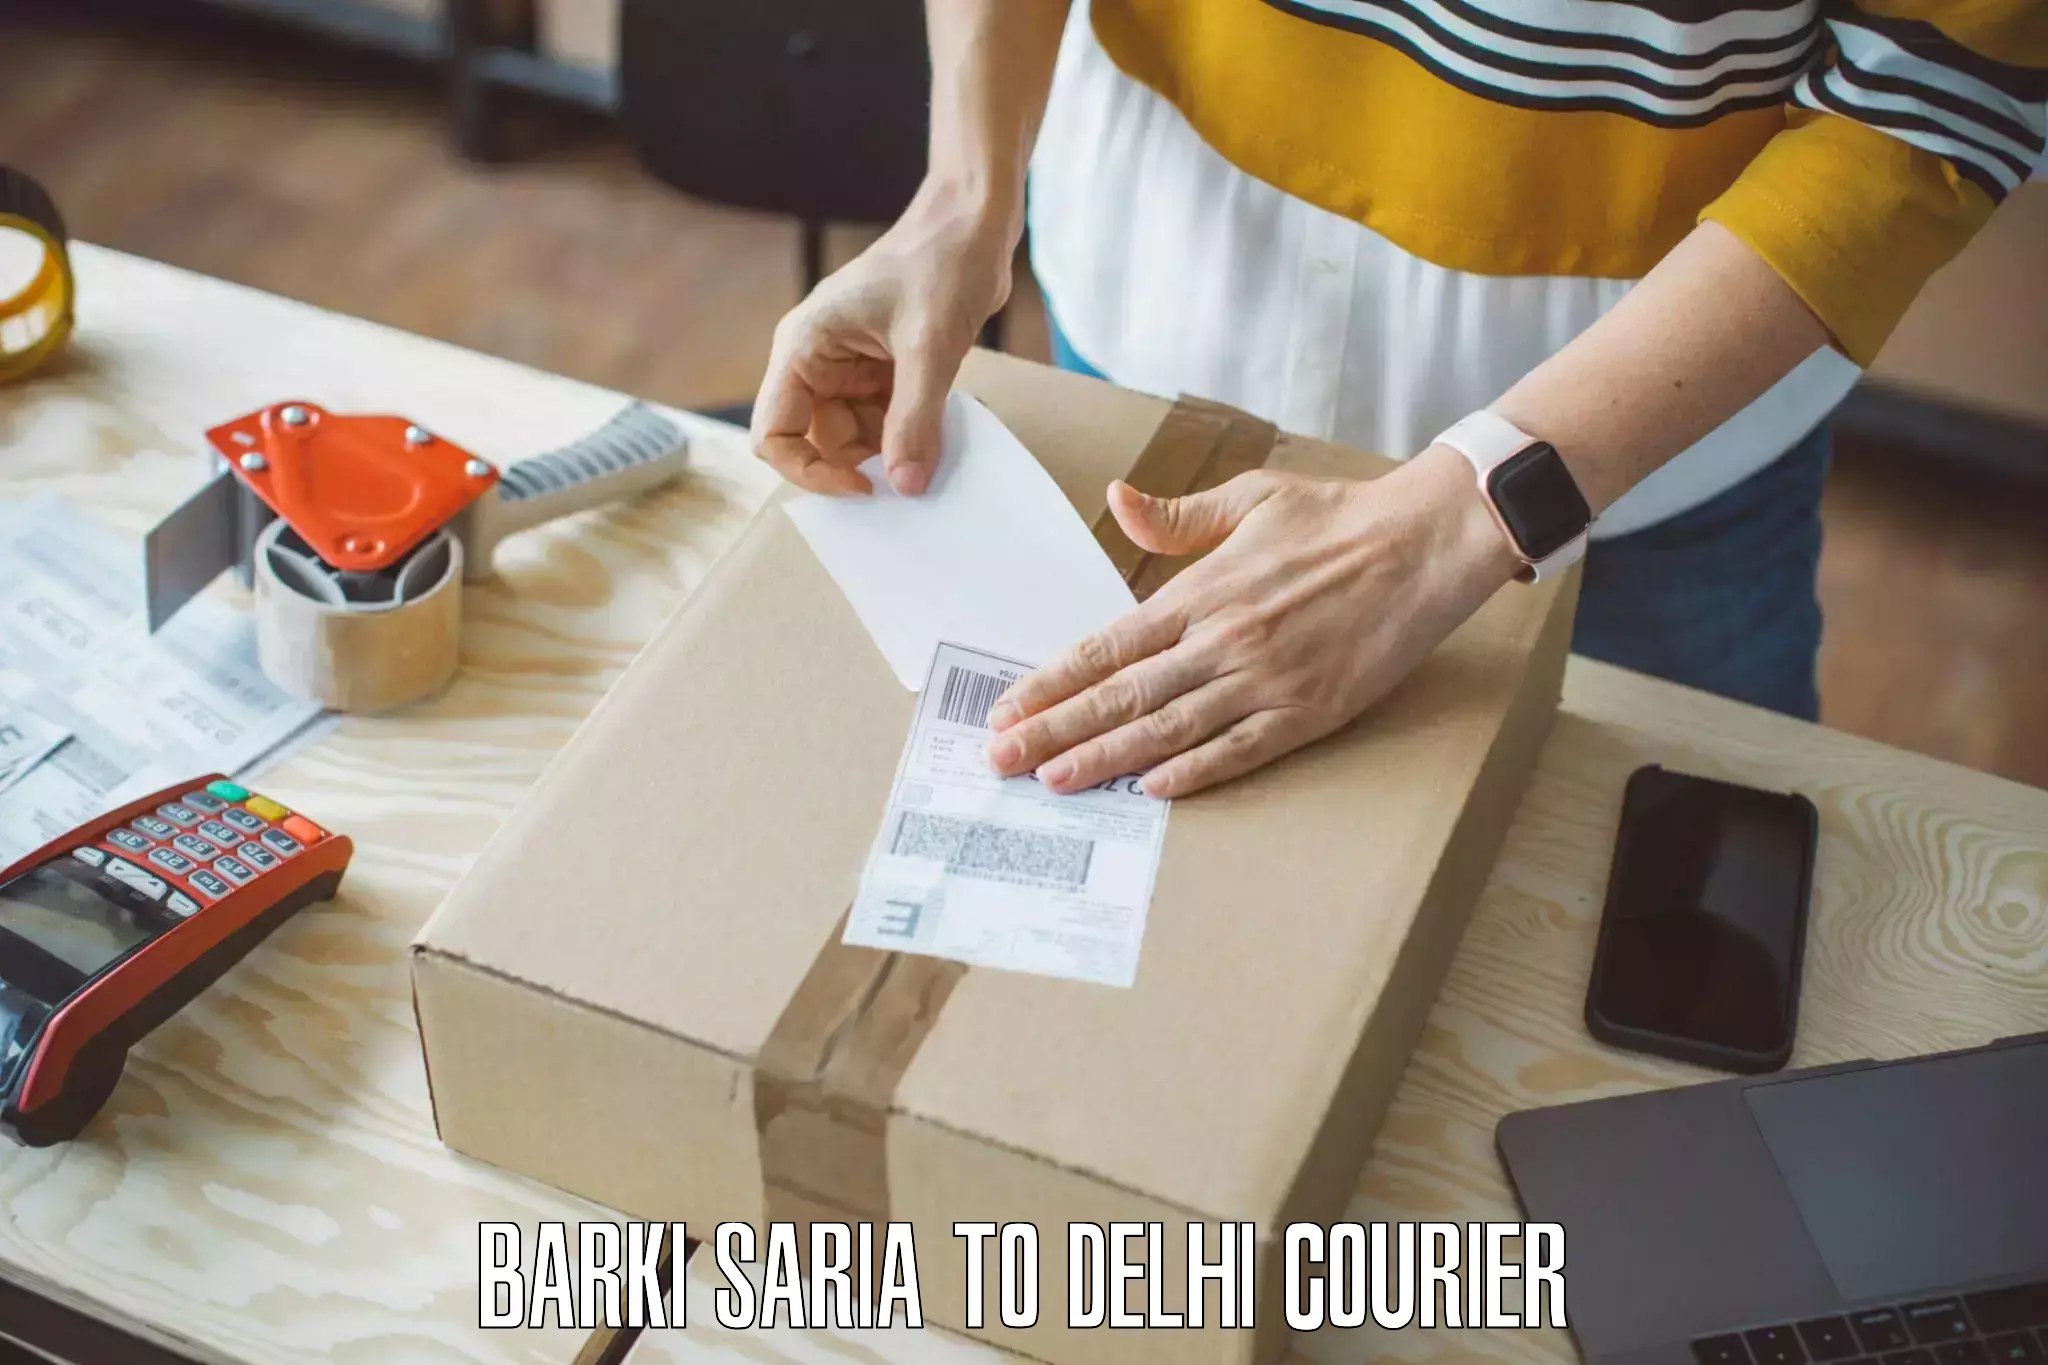 Efficient household movers in Barki Saria to Jamia Millia Islamia New Delhi